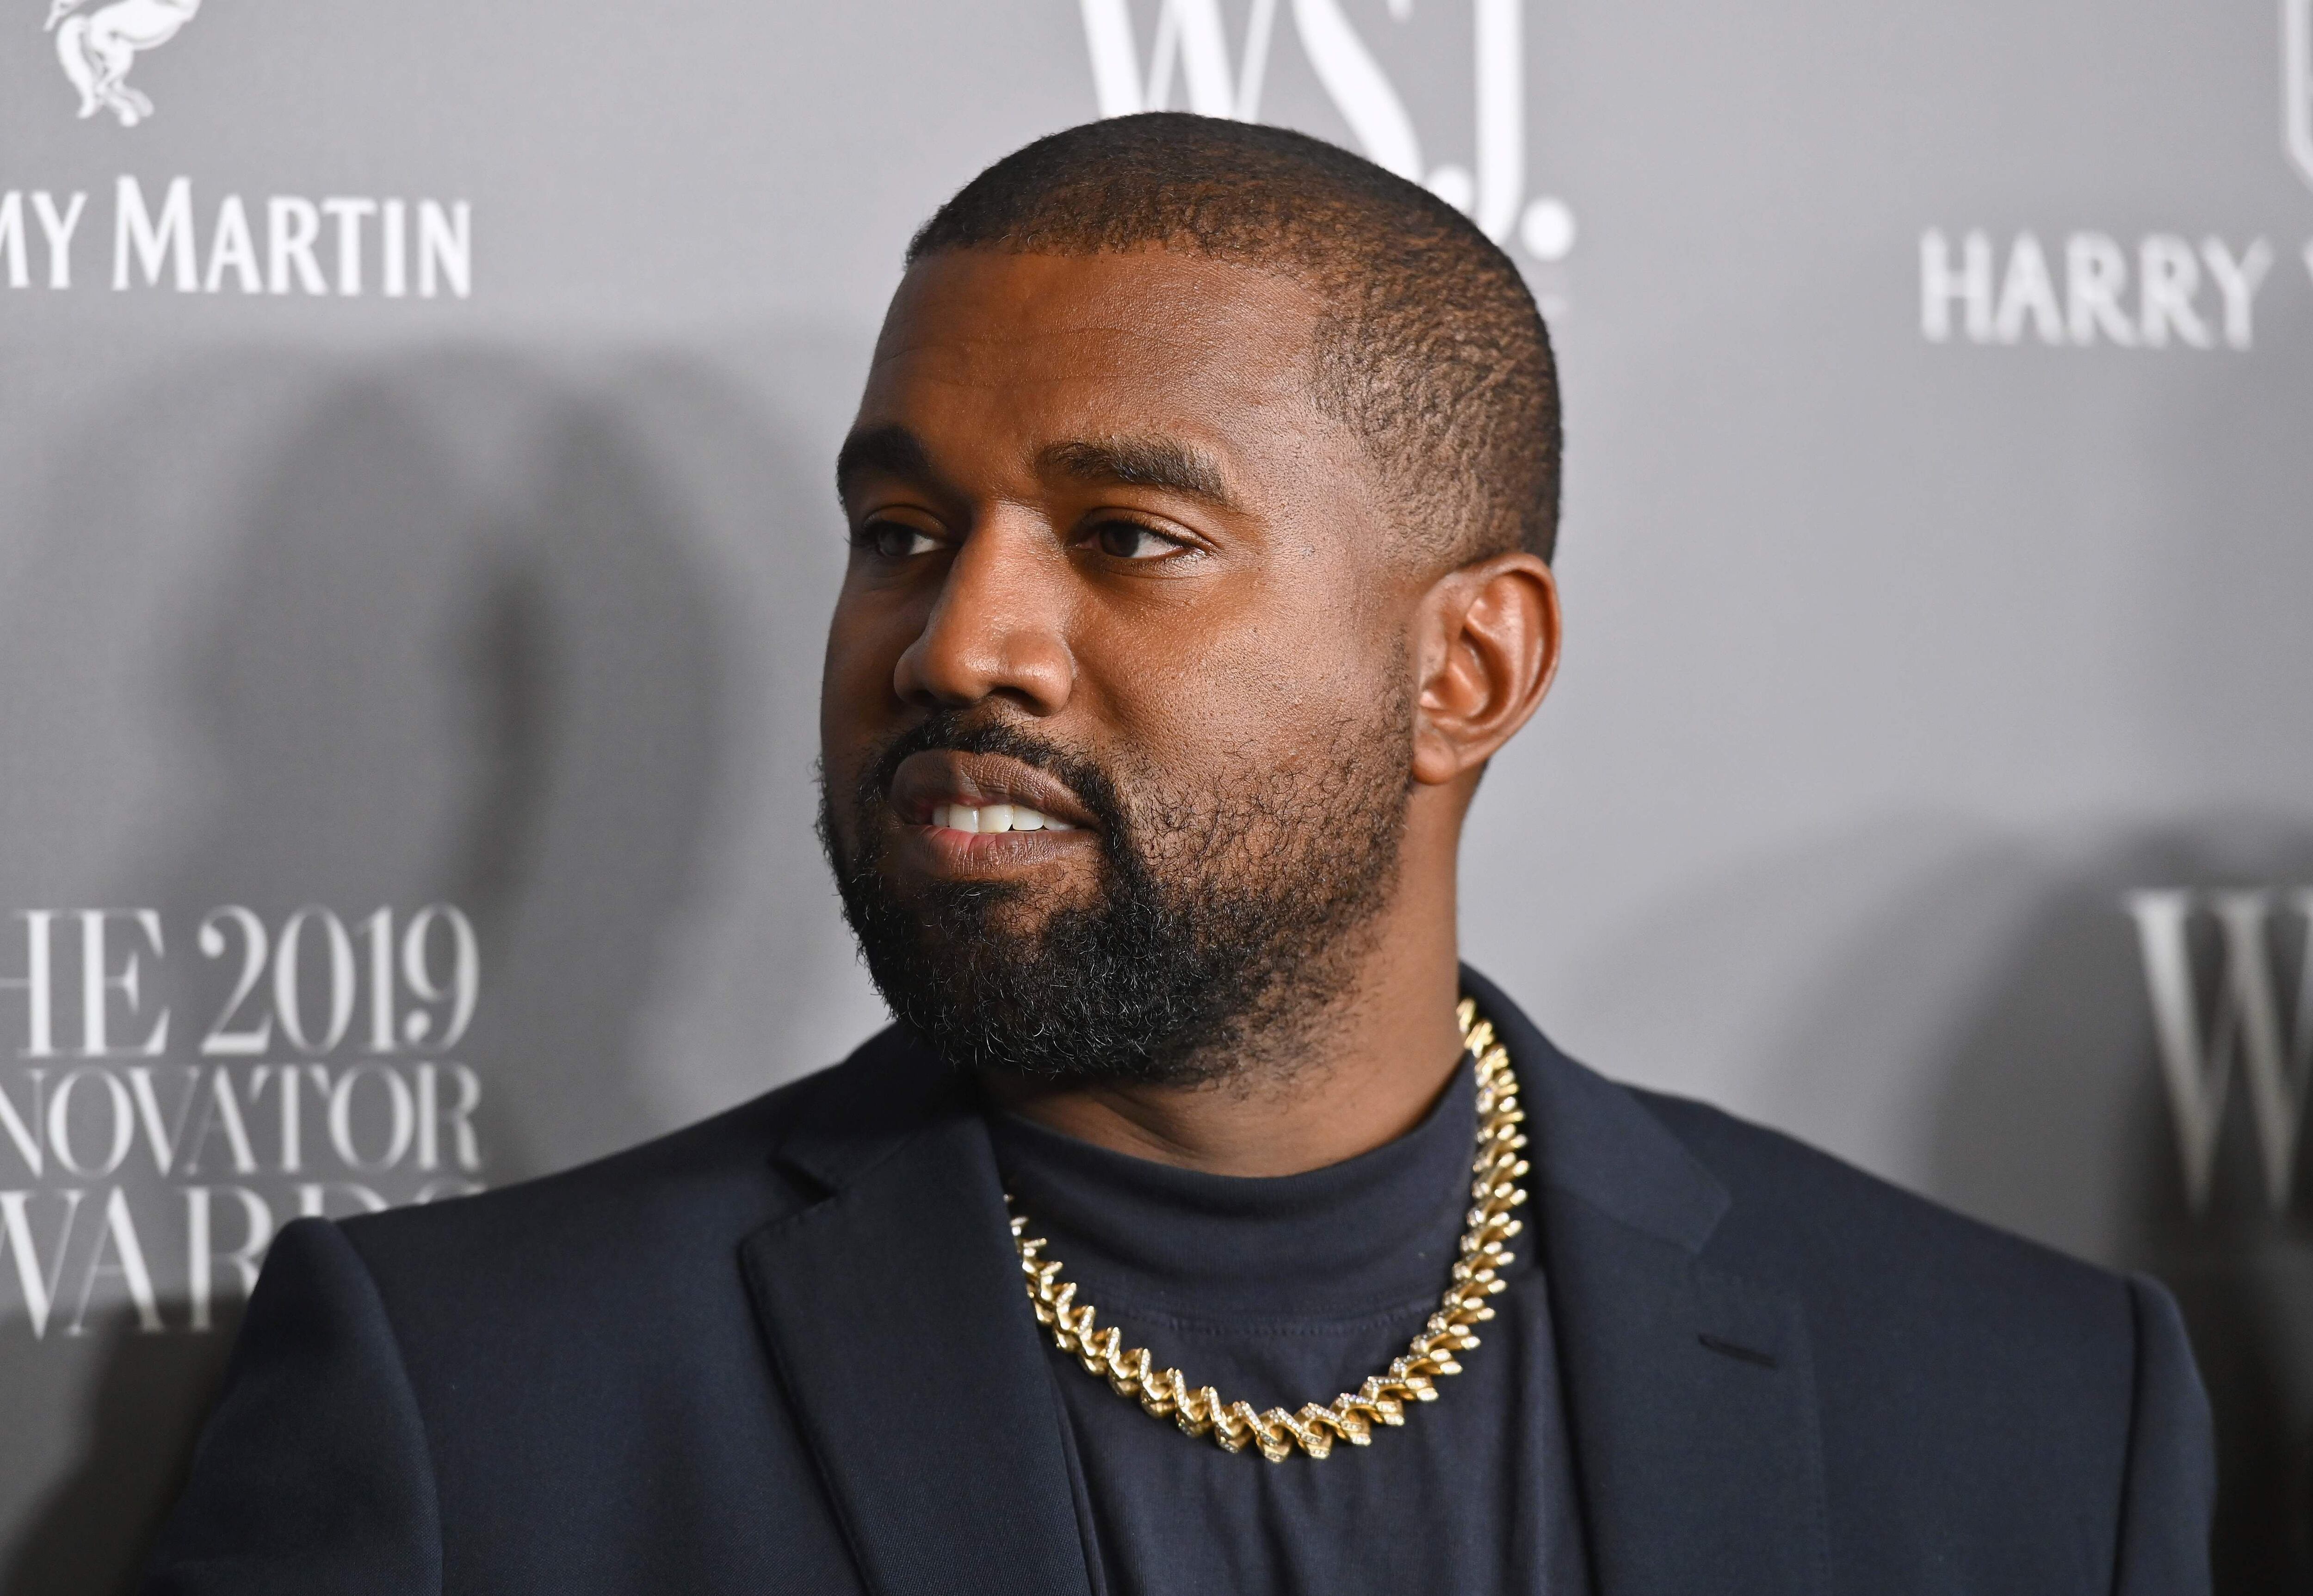 La demanda presentada contra Kanye West incluye acusaciones de racismo y trato discriminatorio hacia empleados afroamericanos.
